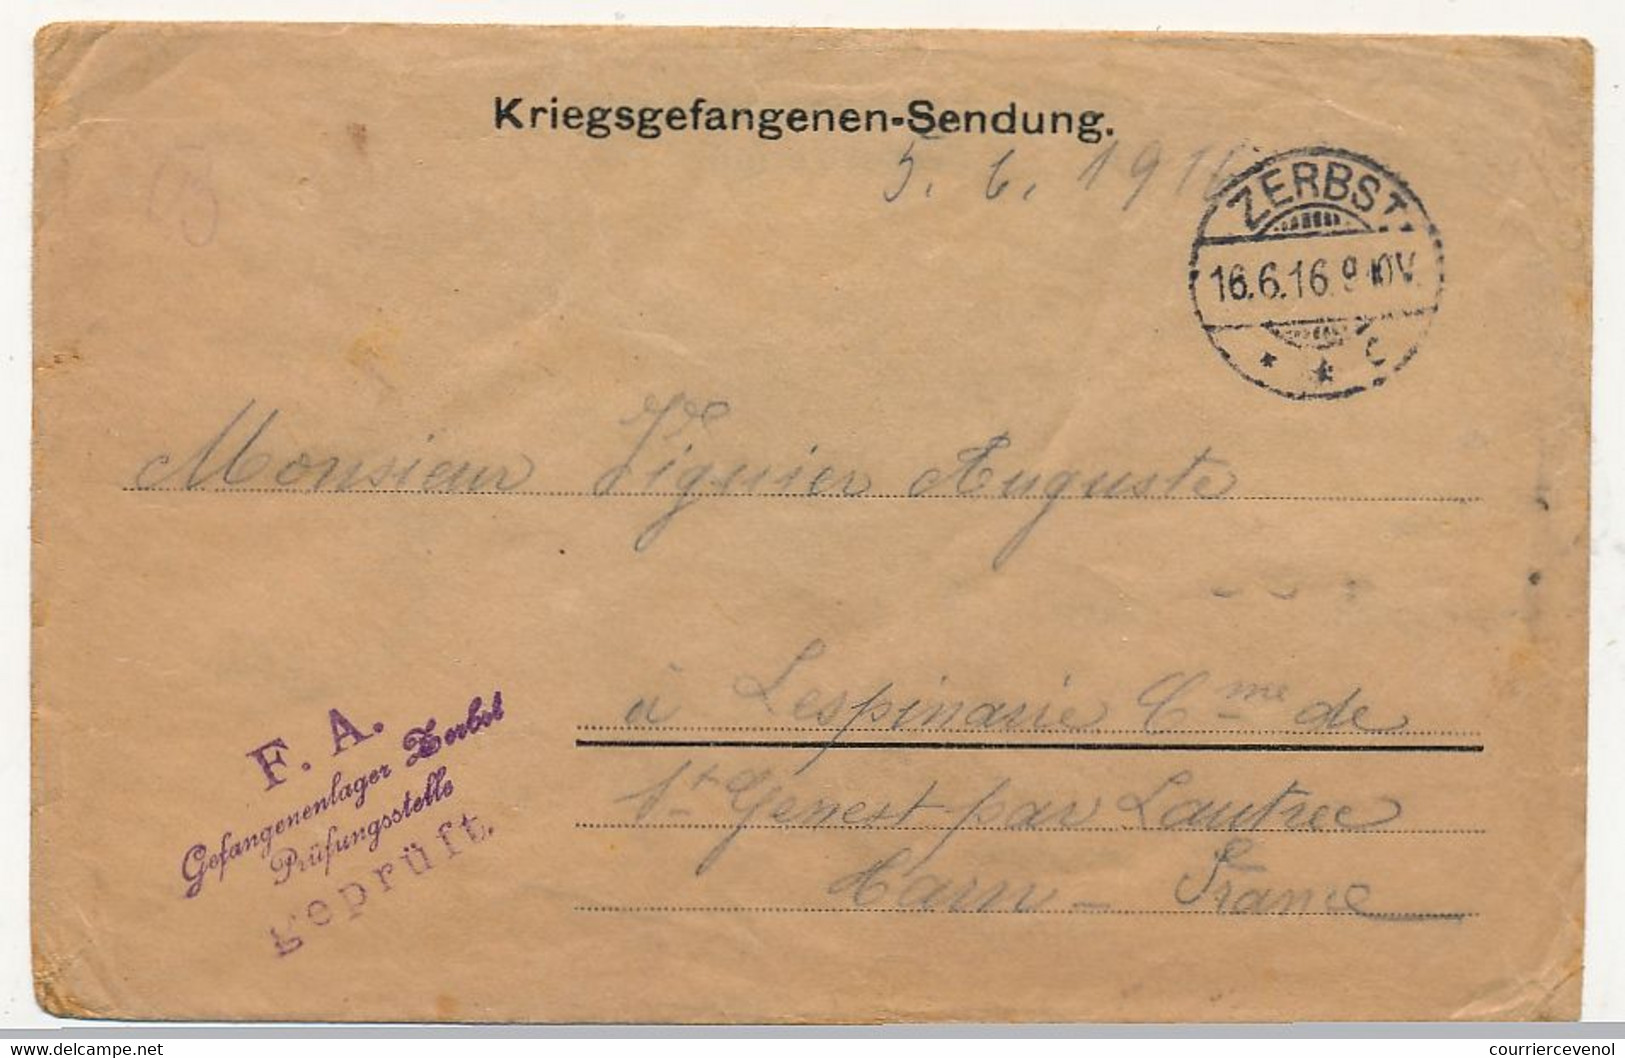 Enveloppe Prisonnier Français - Camp De Zerbst (Anh) - 16/6/1916 - Bilingue Russe / Français - Censure - Guerre De 1914-18